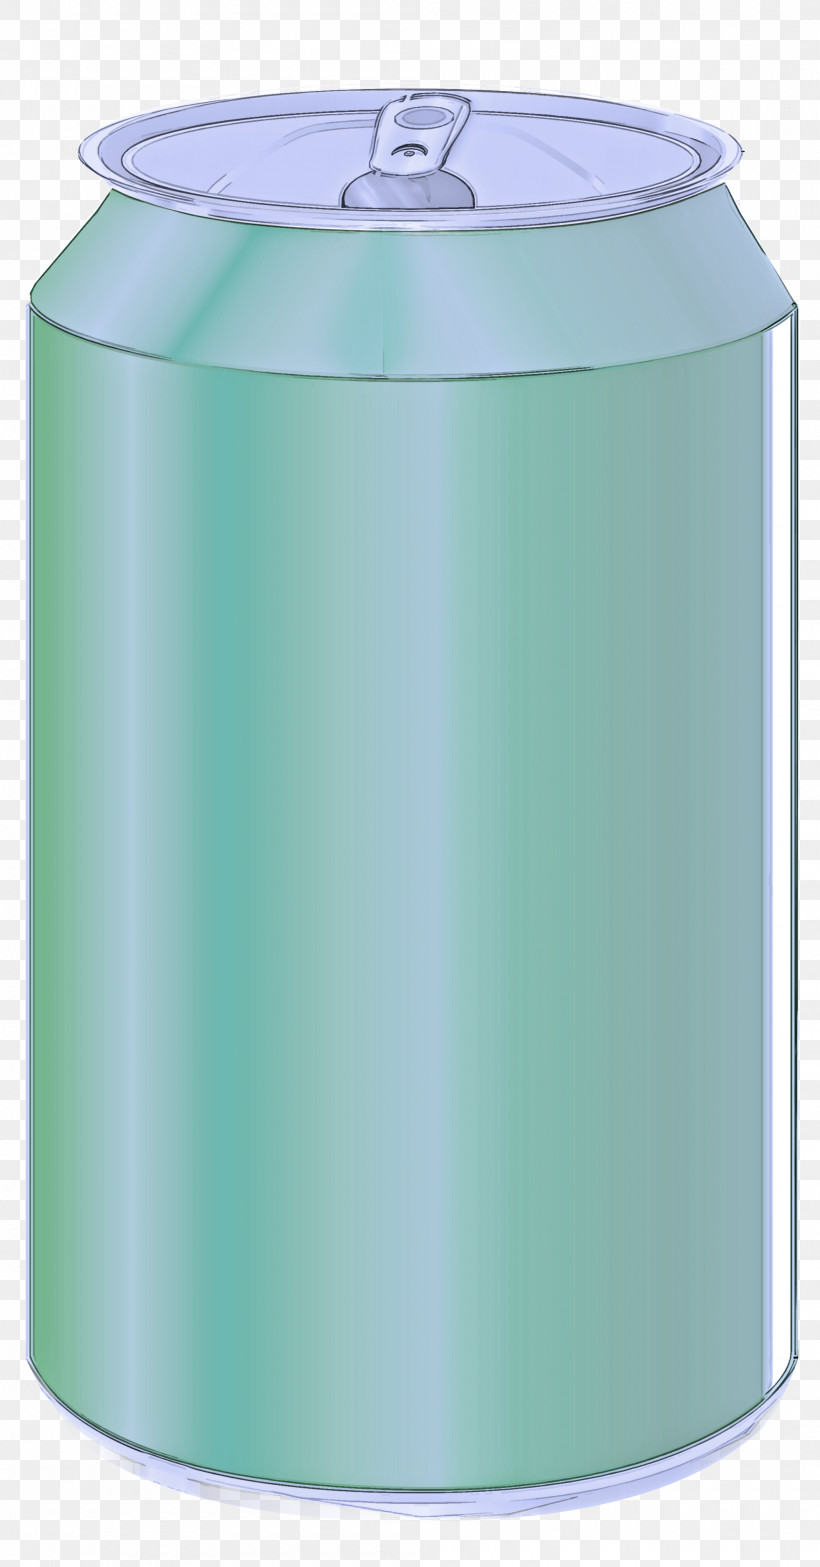 Green Aqua Rain Barrel Cylinder Beverage Can, PNG, 2000x3822px, Green, Aqua, Beverage Can, Cylinder, Rain Barrel Download Free